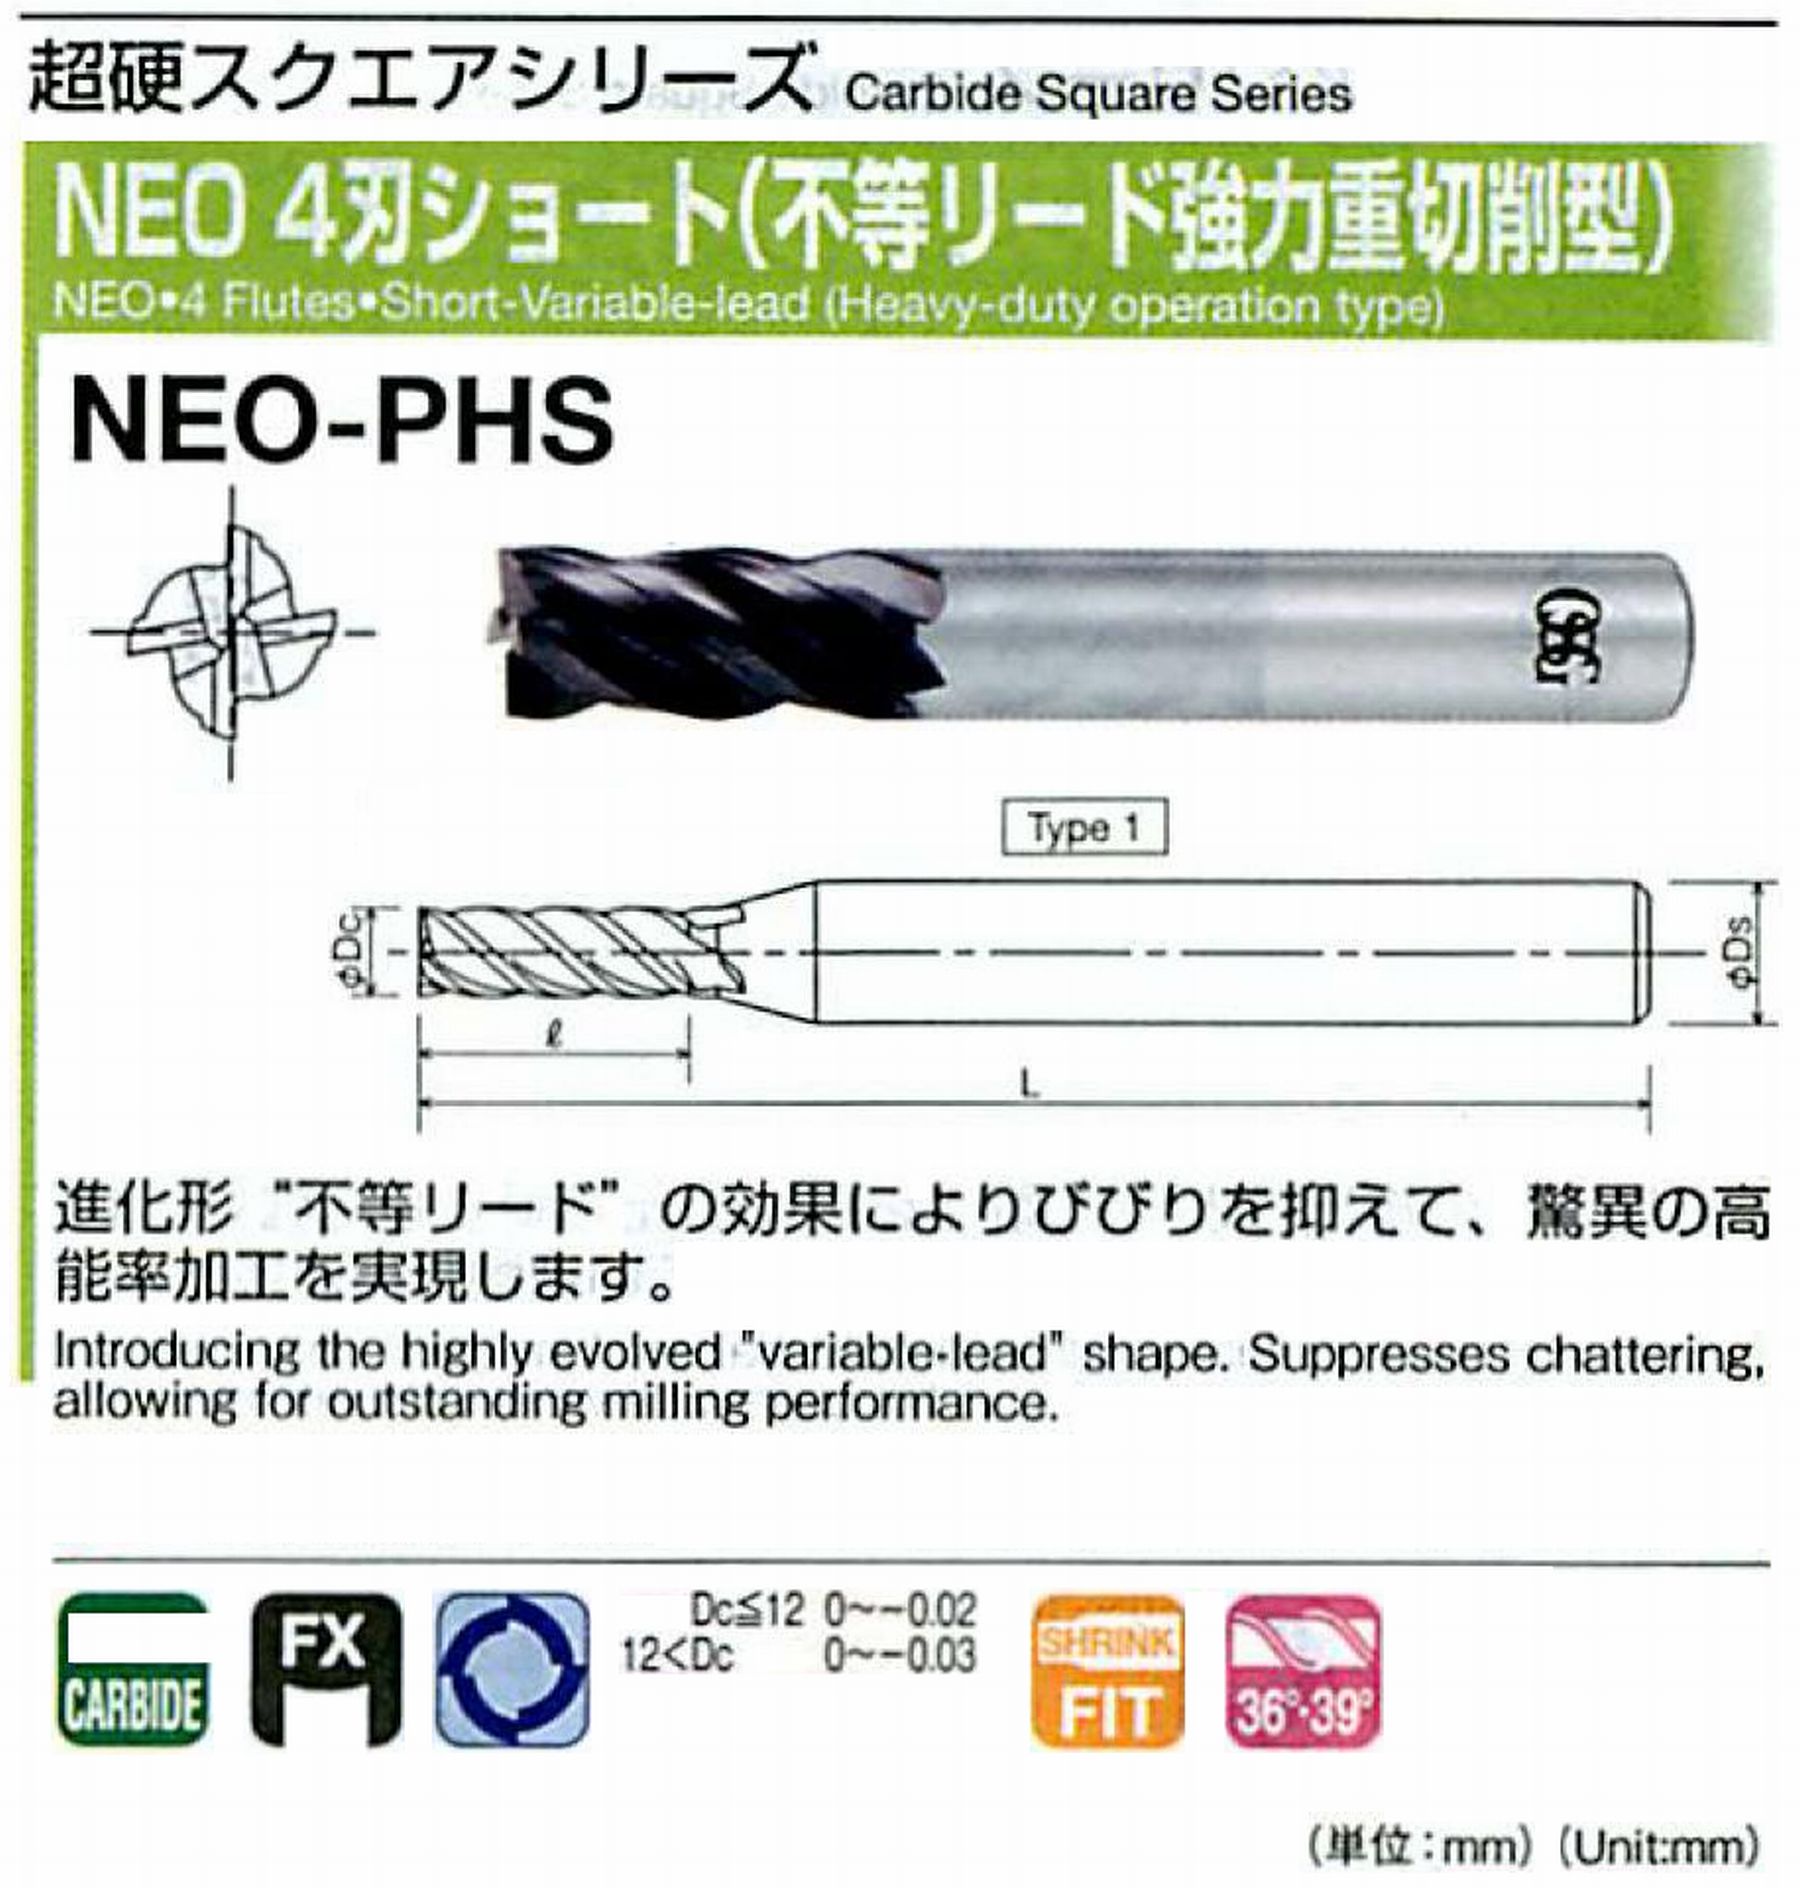 オーエスジー/OSG NEO 4刃ショート(不等リード強力重切削型) NEO-PHS 外径3 全長50 刃長6 シャンク径6mm 形状1